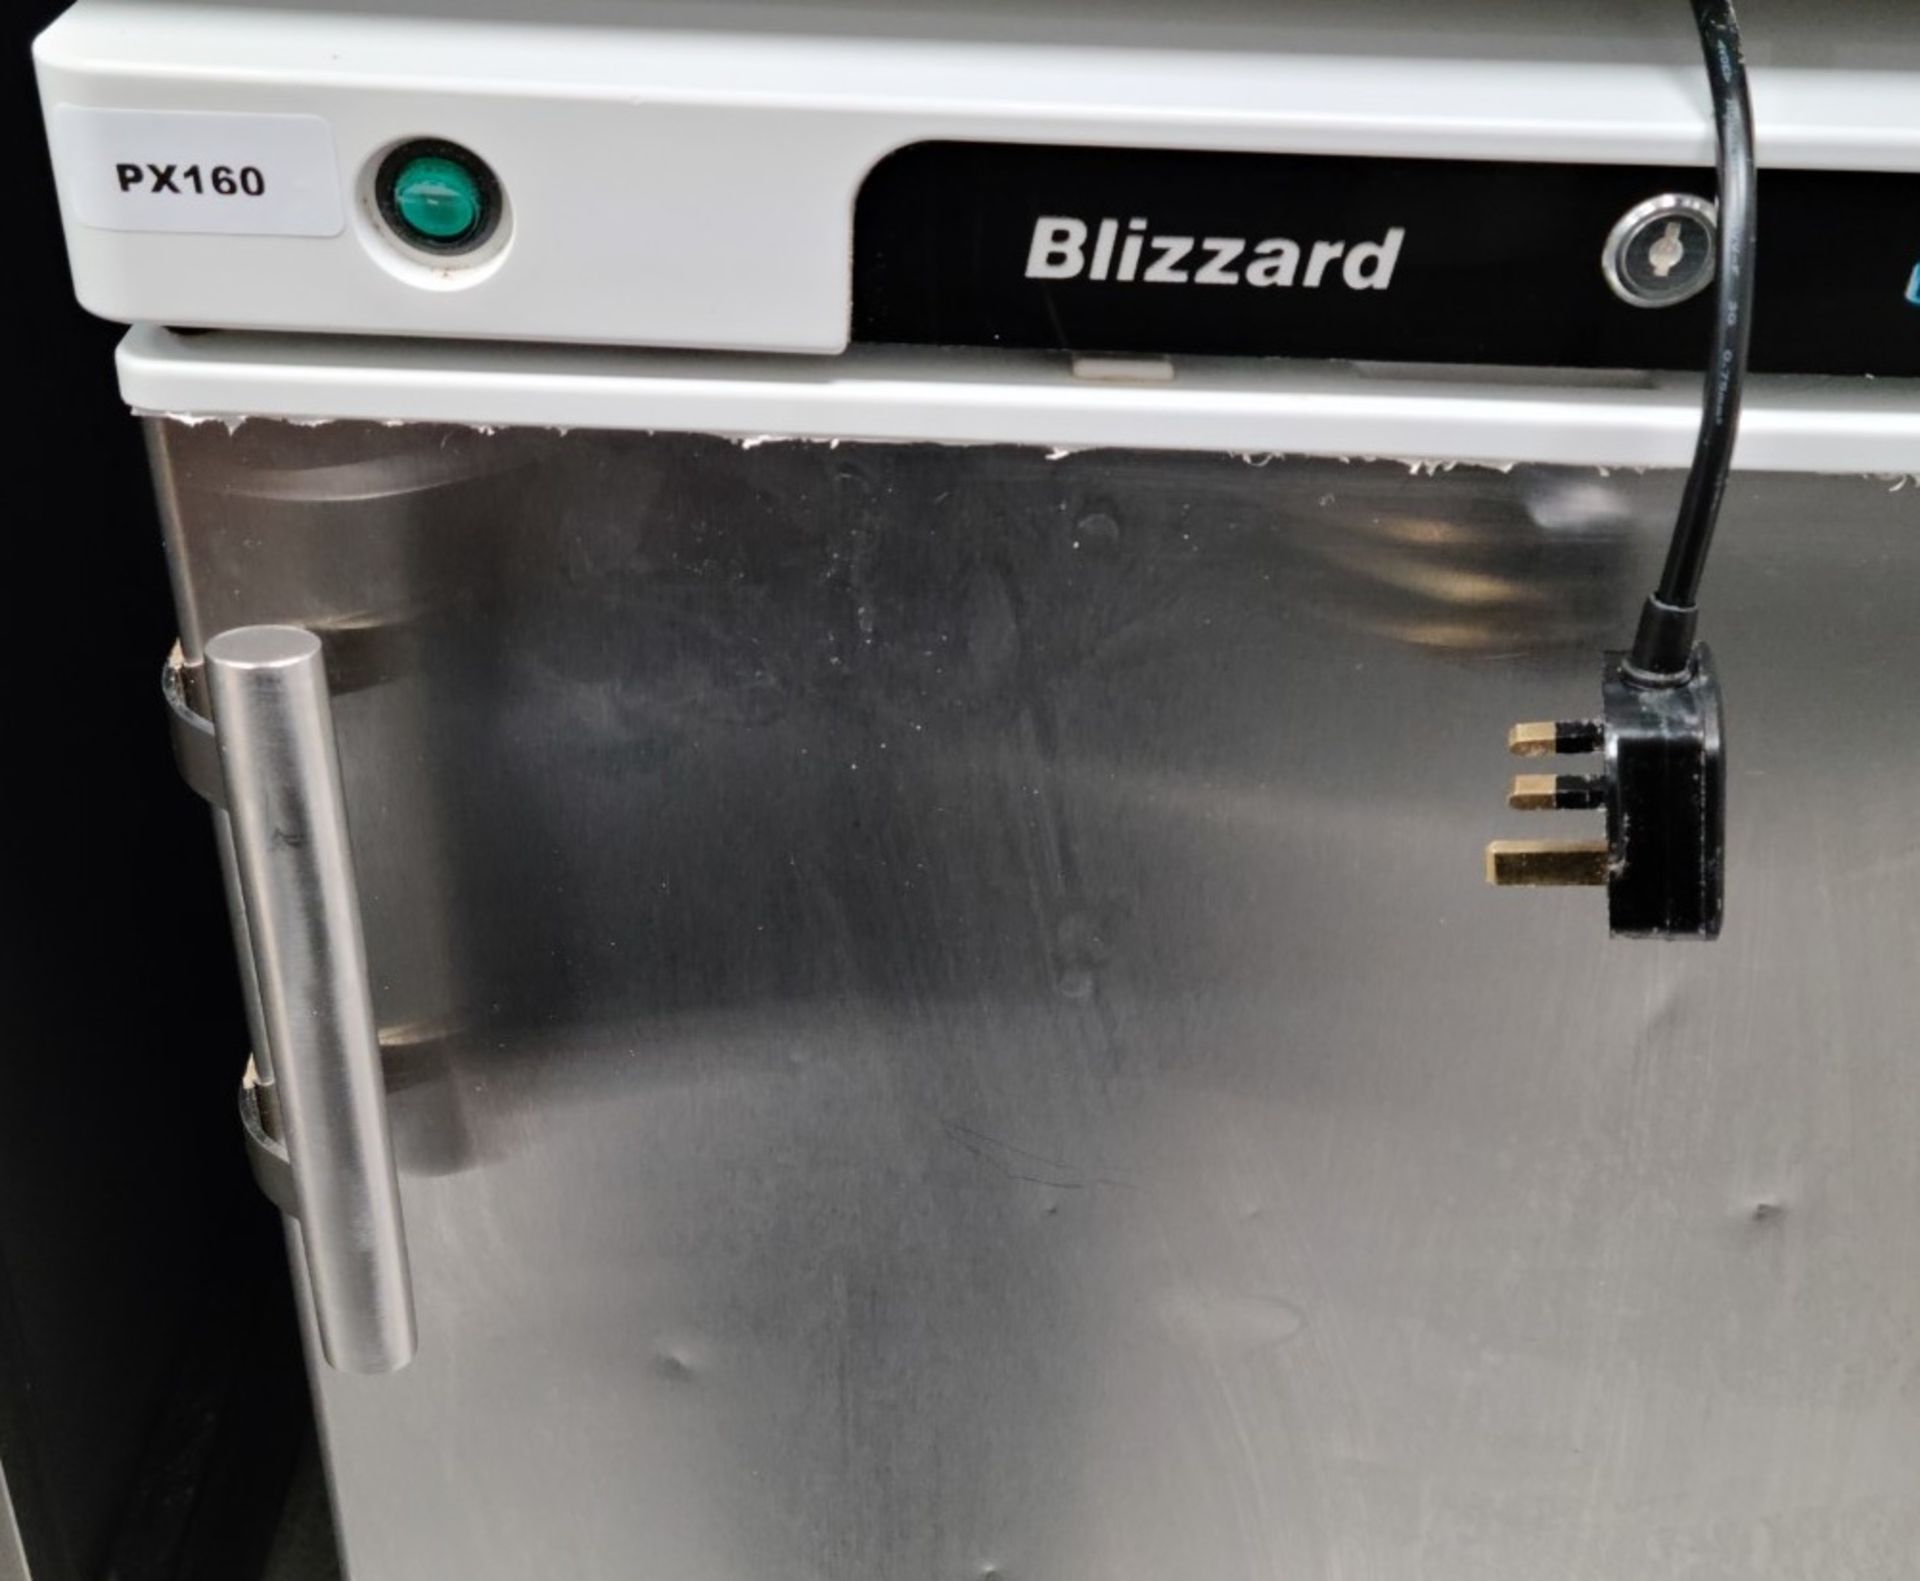 1 x BLIZZARD Efficient Stainless Steel Under Counter Storage Freezer 84cm x 60cm - Image 3 of 6